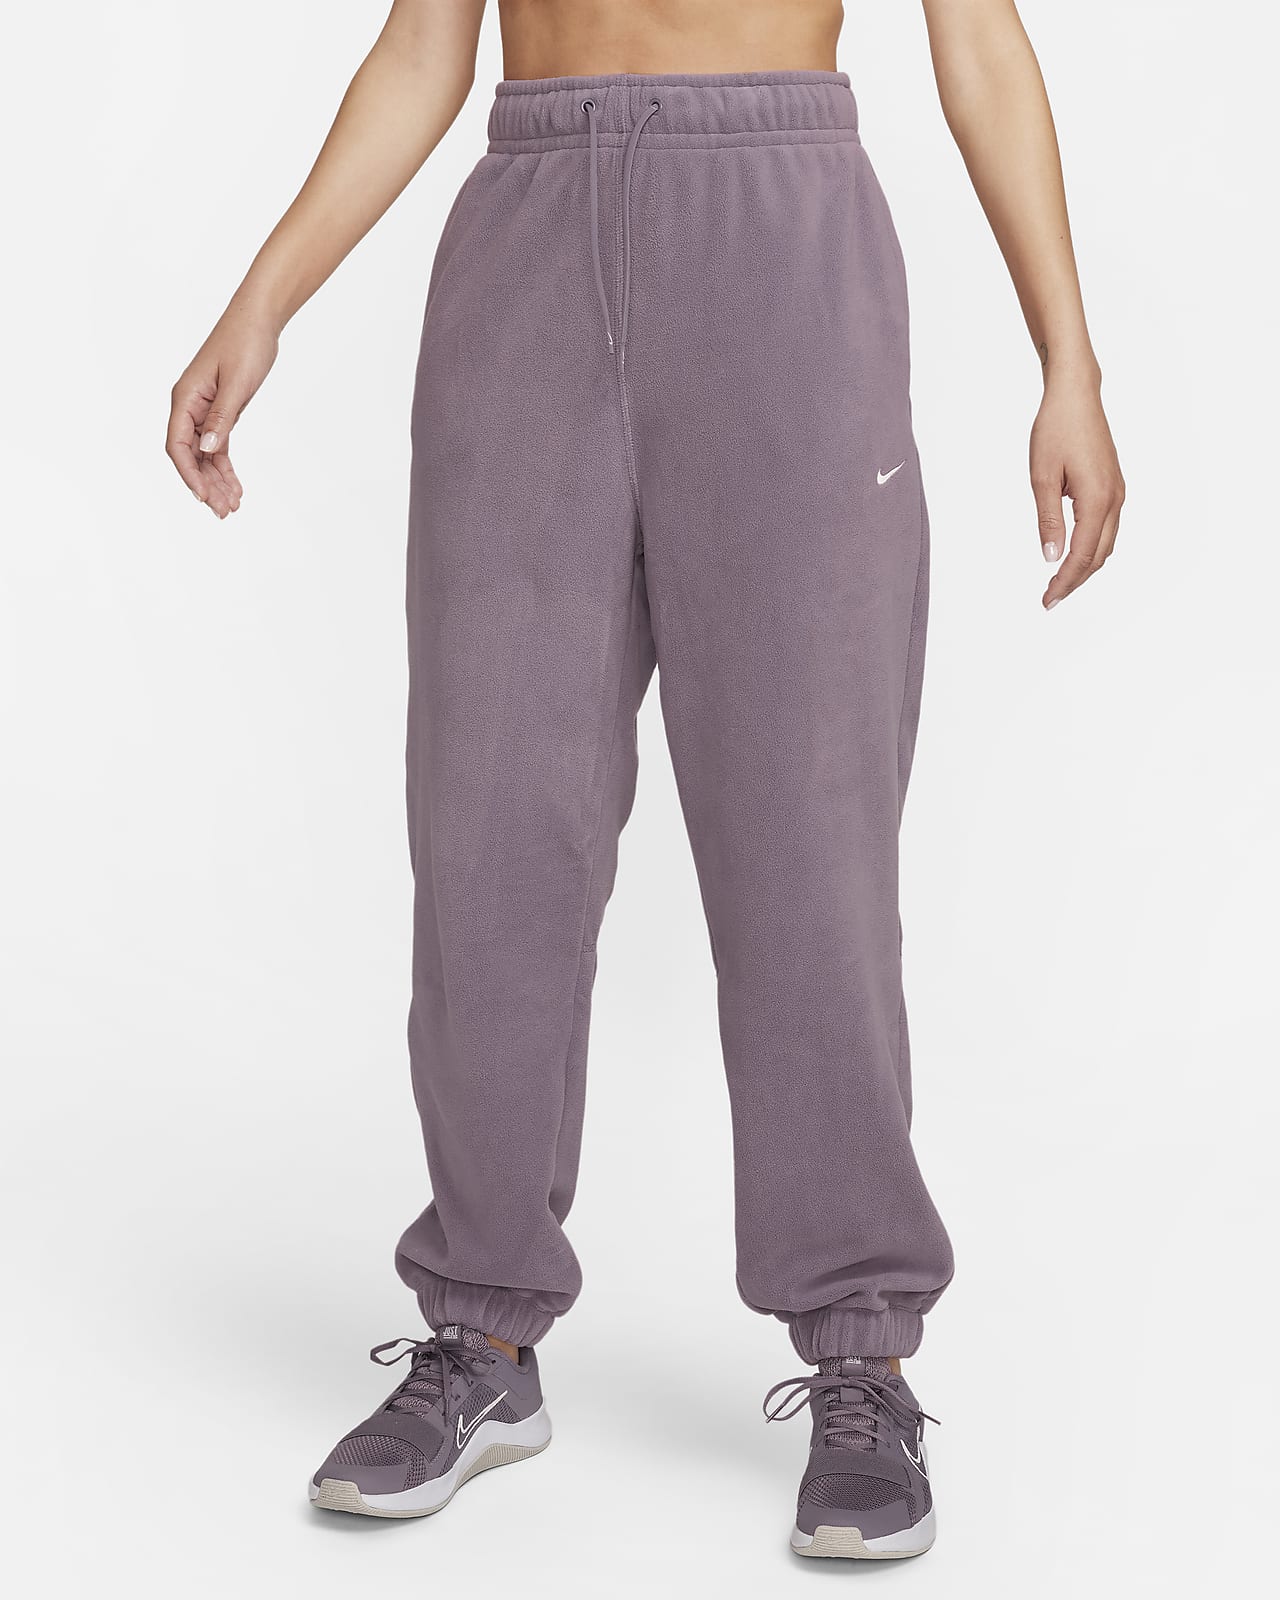 Pantalon à coupe ample en tissu Fleece Nike Therma-FIT One pour femme